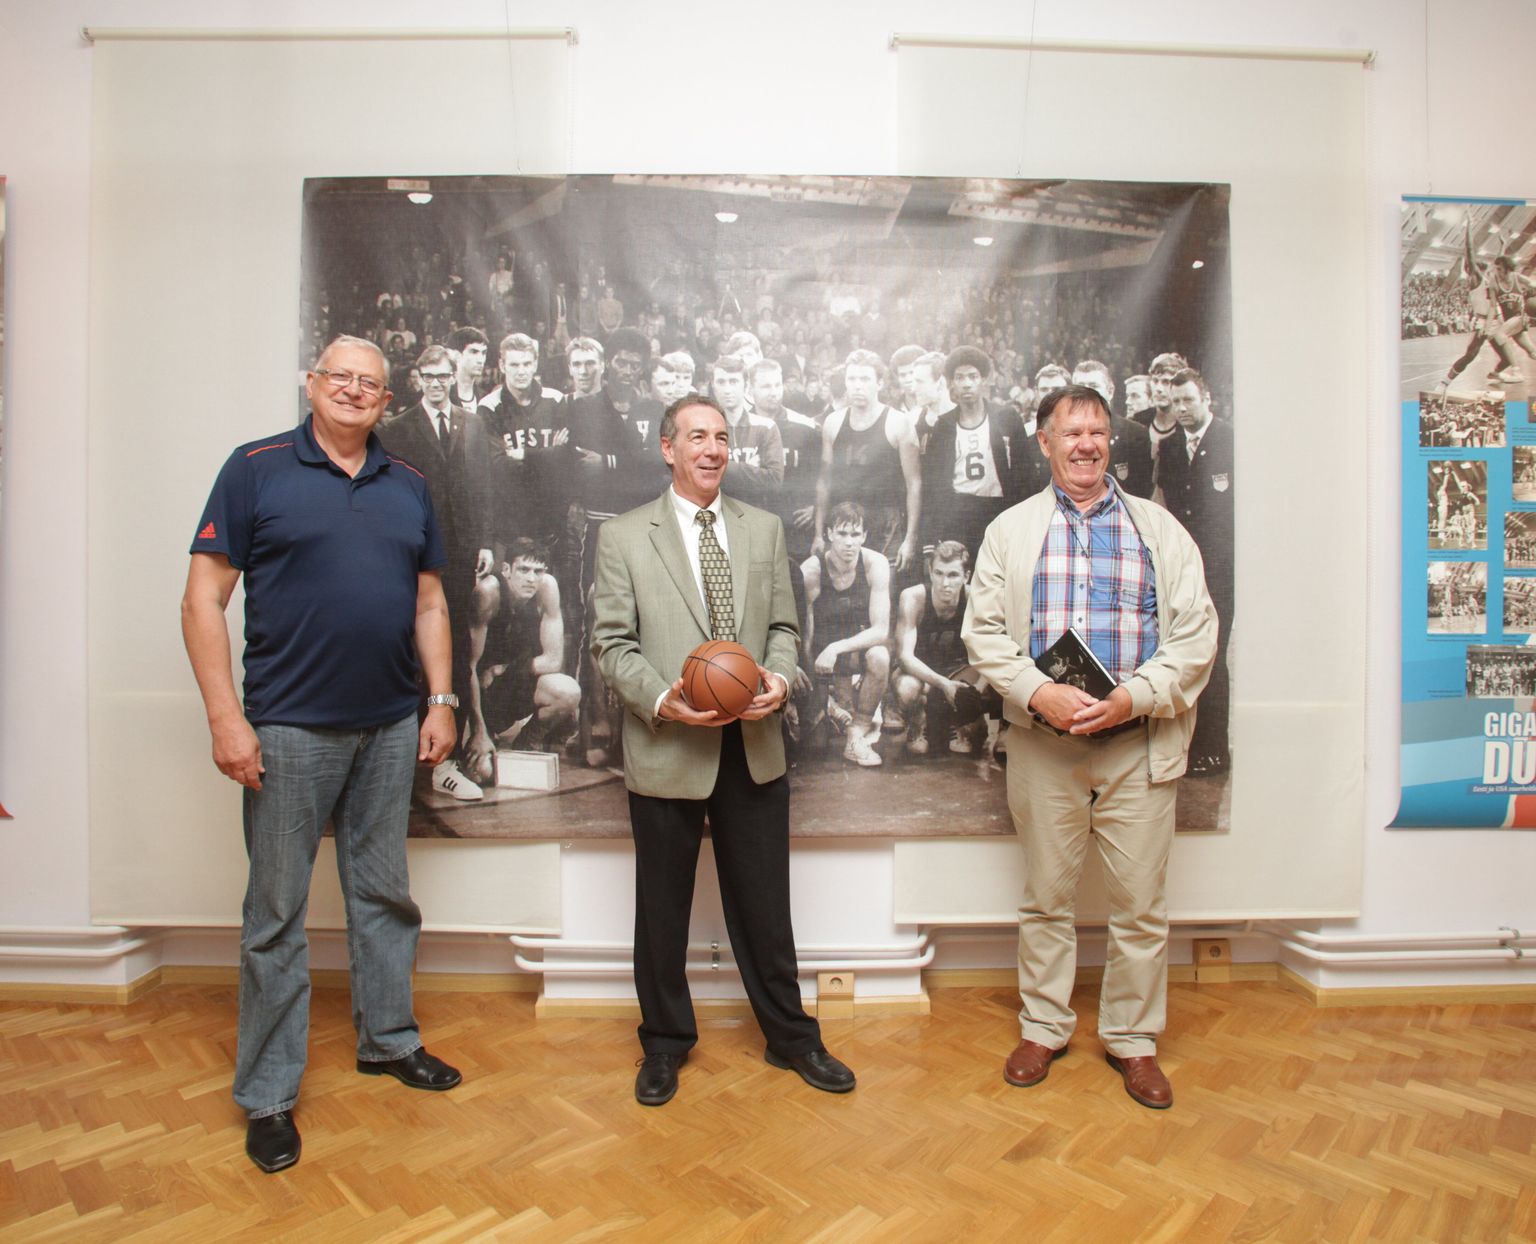 Eesti Spordimuuseumis avati näitus "Gigantide duell. Eesti ja USA suurheitlused korvpalliväljakutel" (pildil vasakult Jaak Salumets, Jeffrey D. Levine ja Aleksei Tammiste).